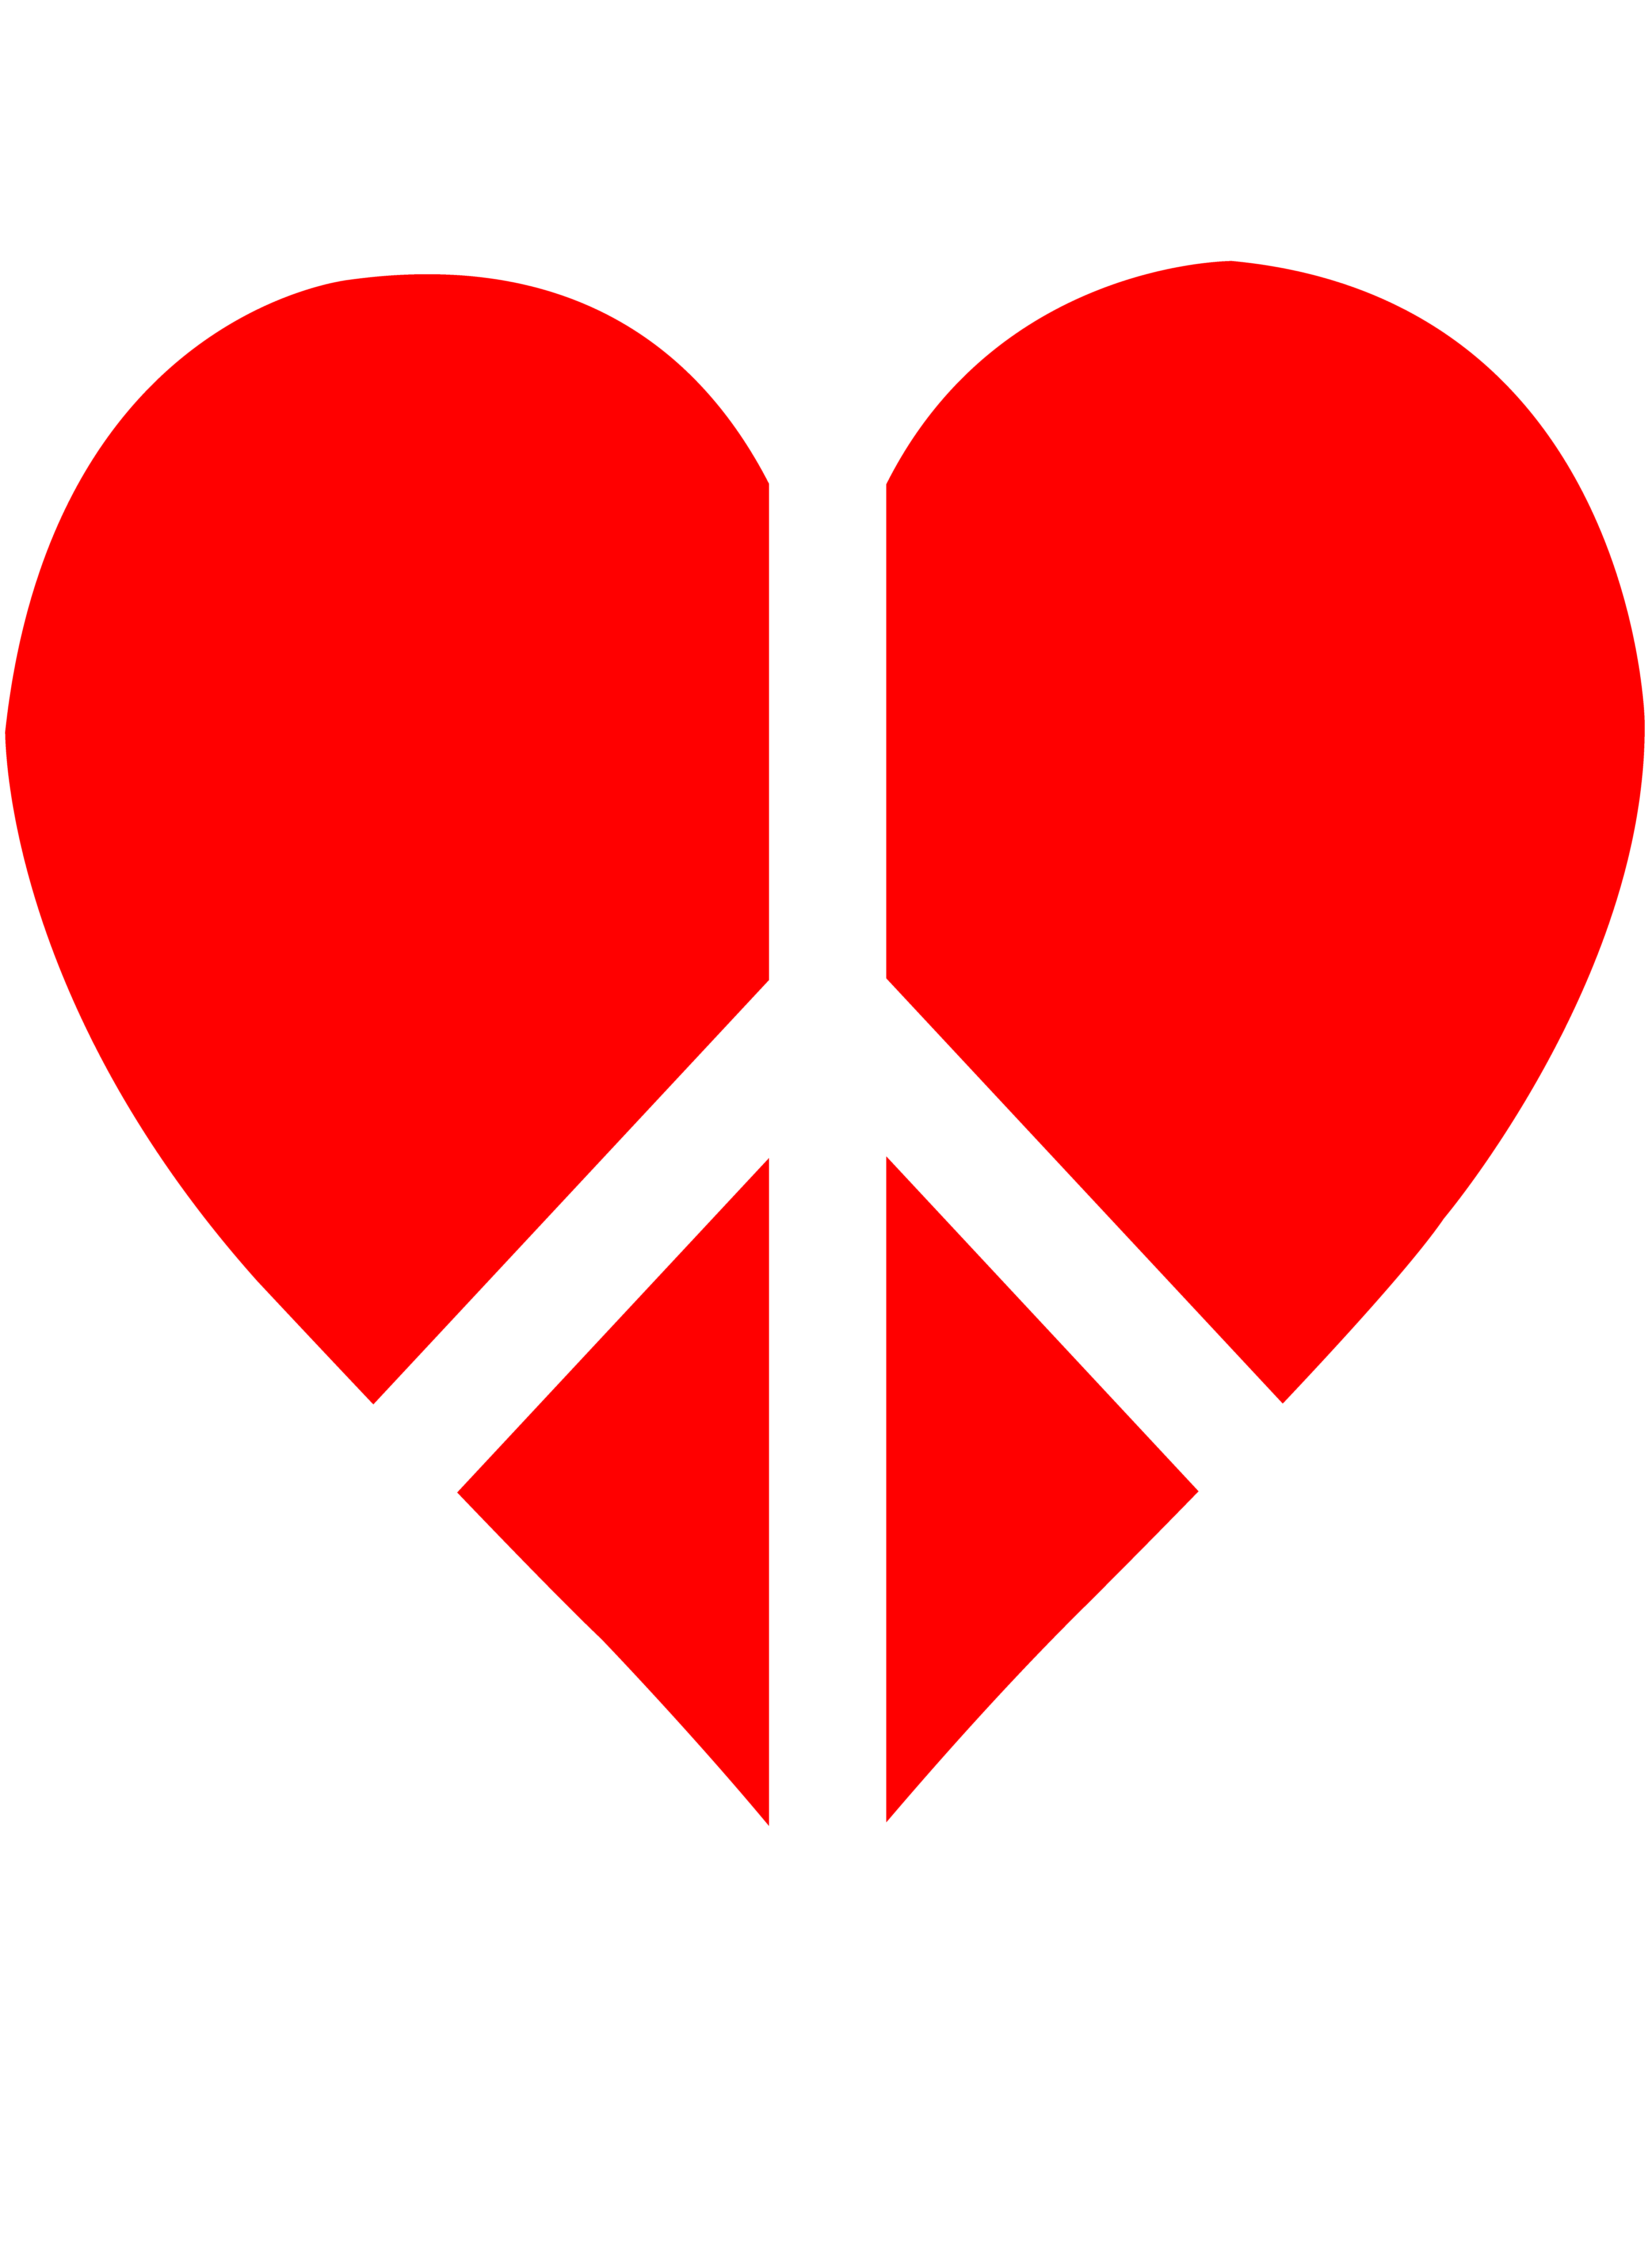 peace clipart heart